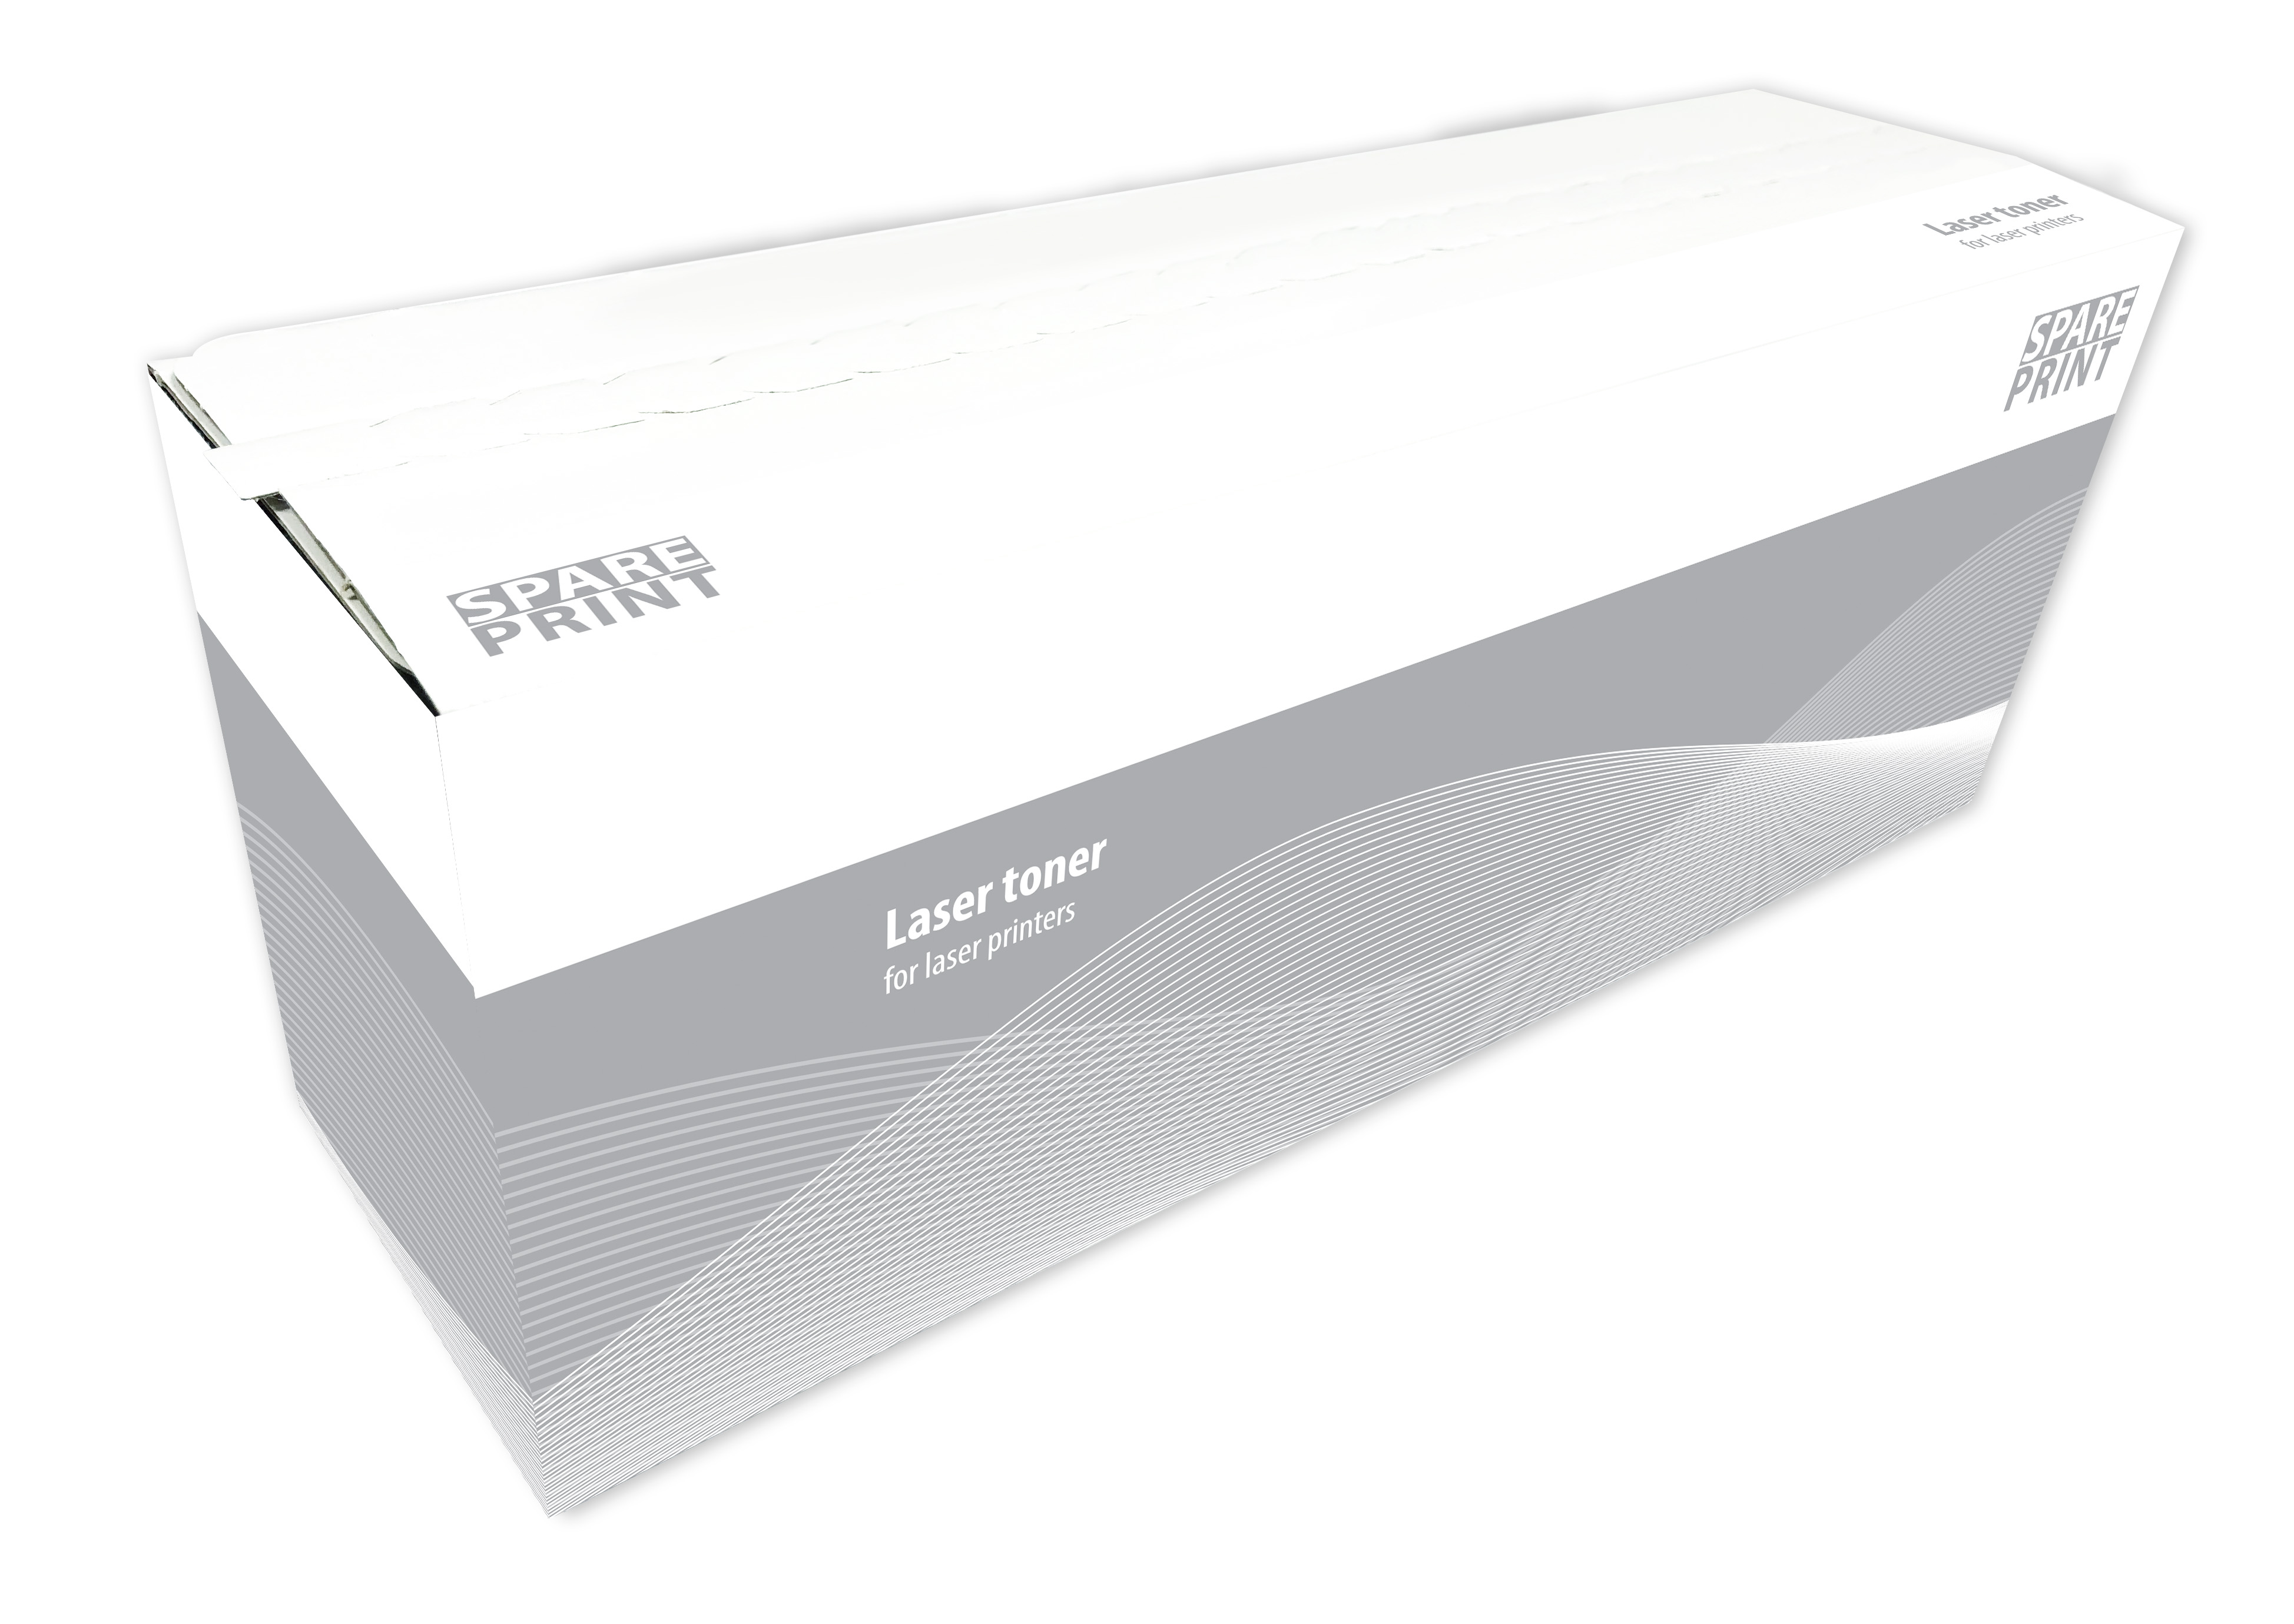 SPARE PRINT kompatibilní toner CF533A č. 205A Magenta pro tiskárny HP